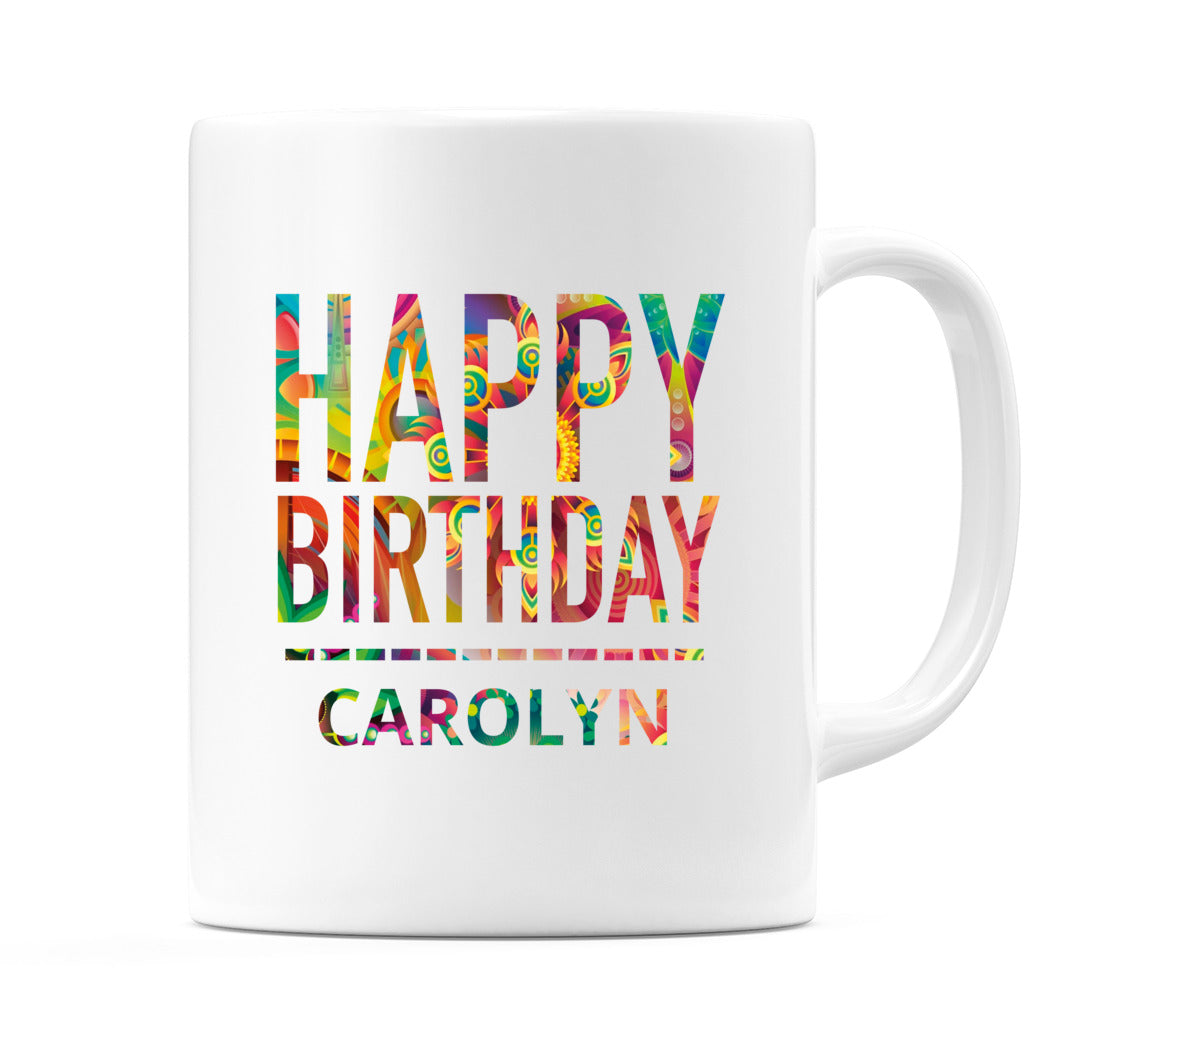 Happy Birthday Carolyn (Tie Dye Effect) Mug Cup by WeDoMugs